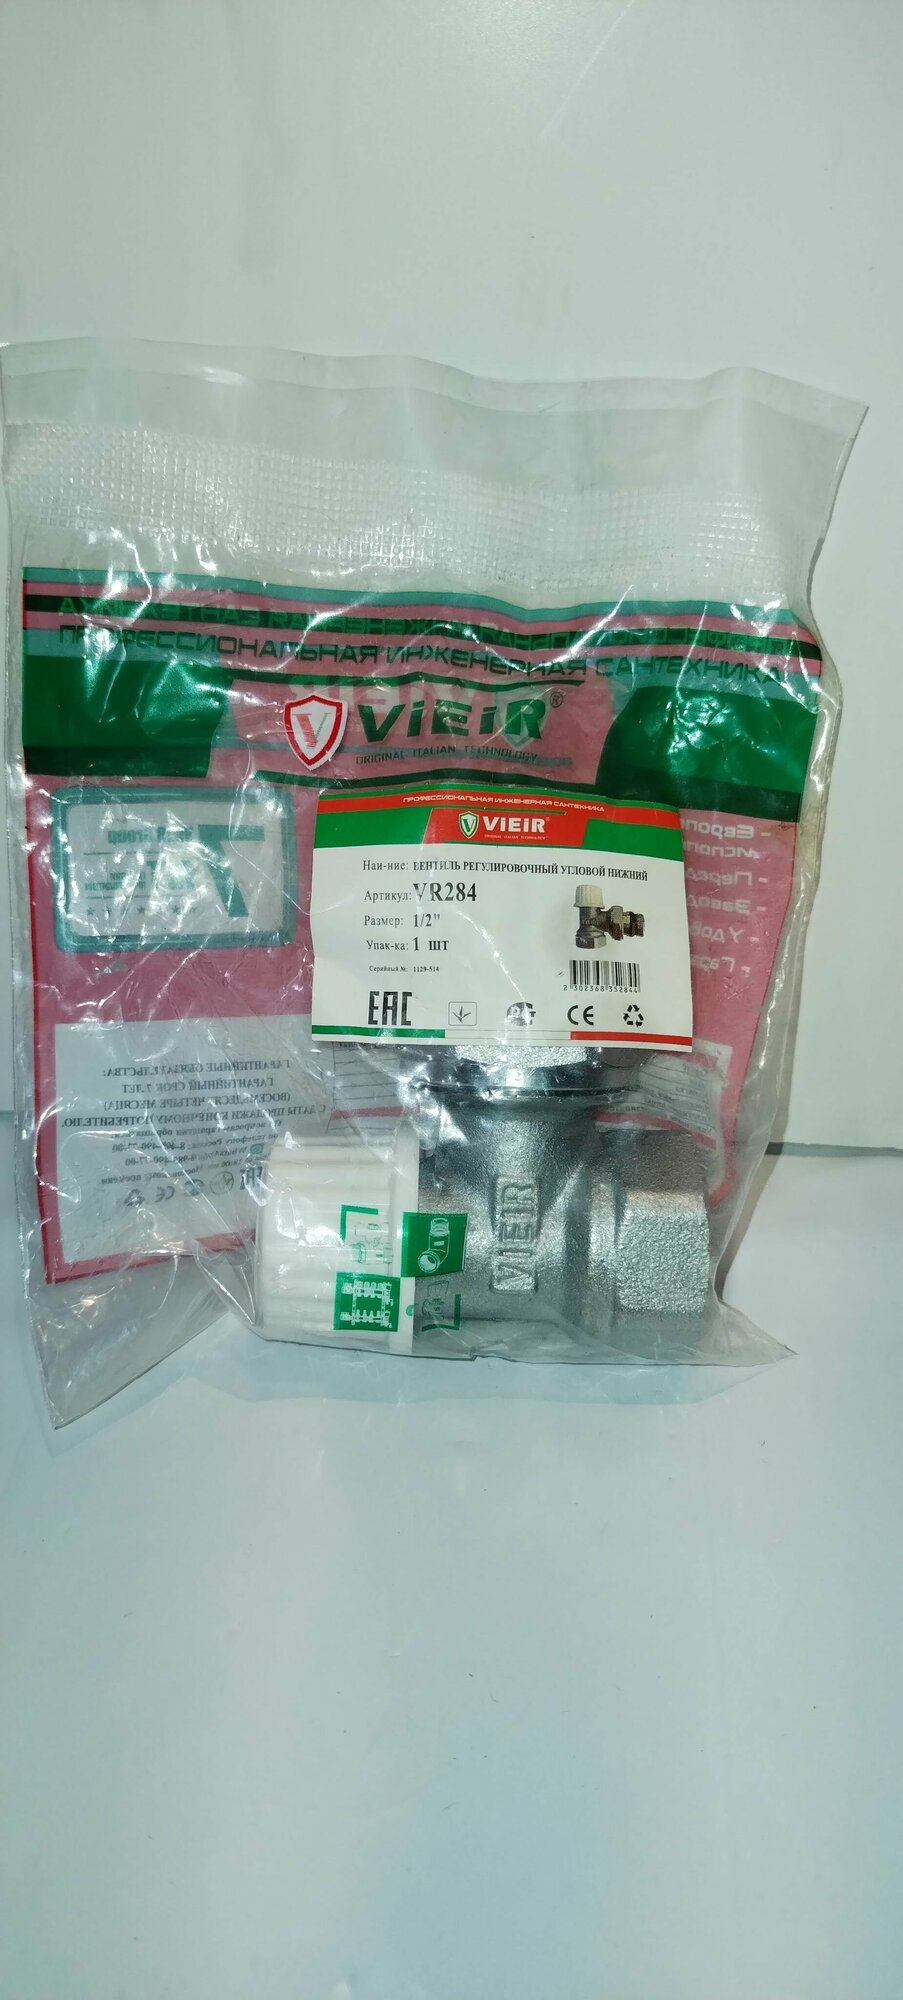 Вентиль настроечный угловой нижний VR284 Vieir 1/2"/ для радиатора отопления